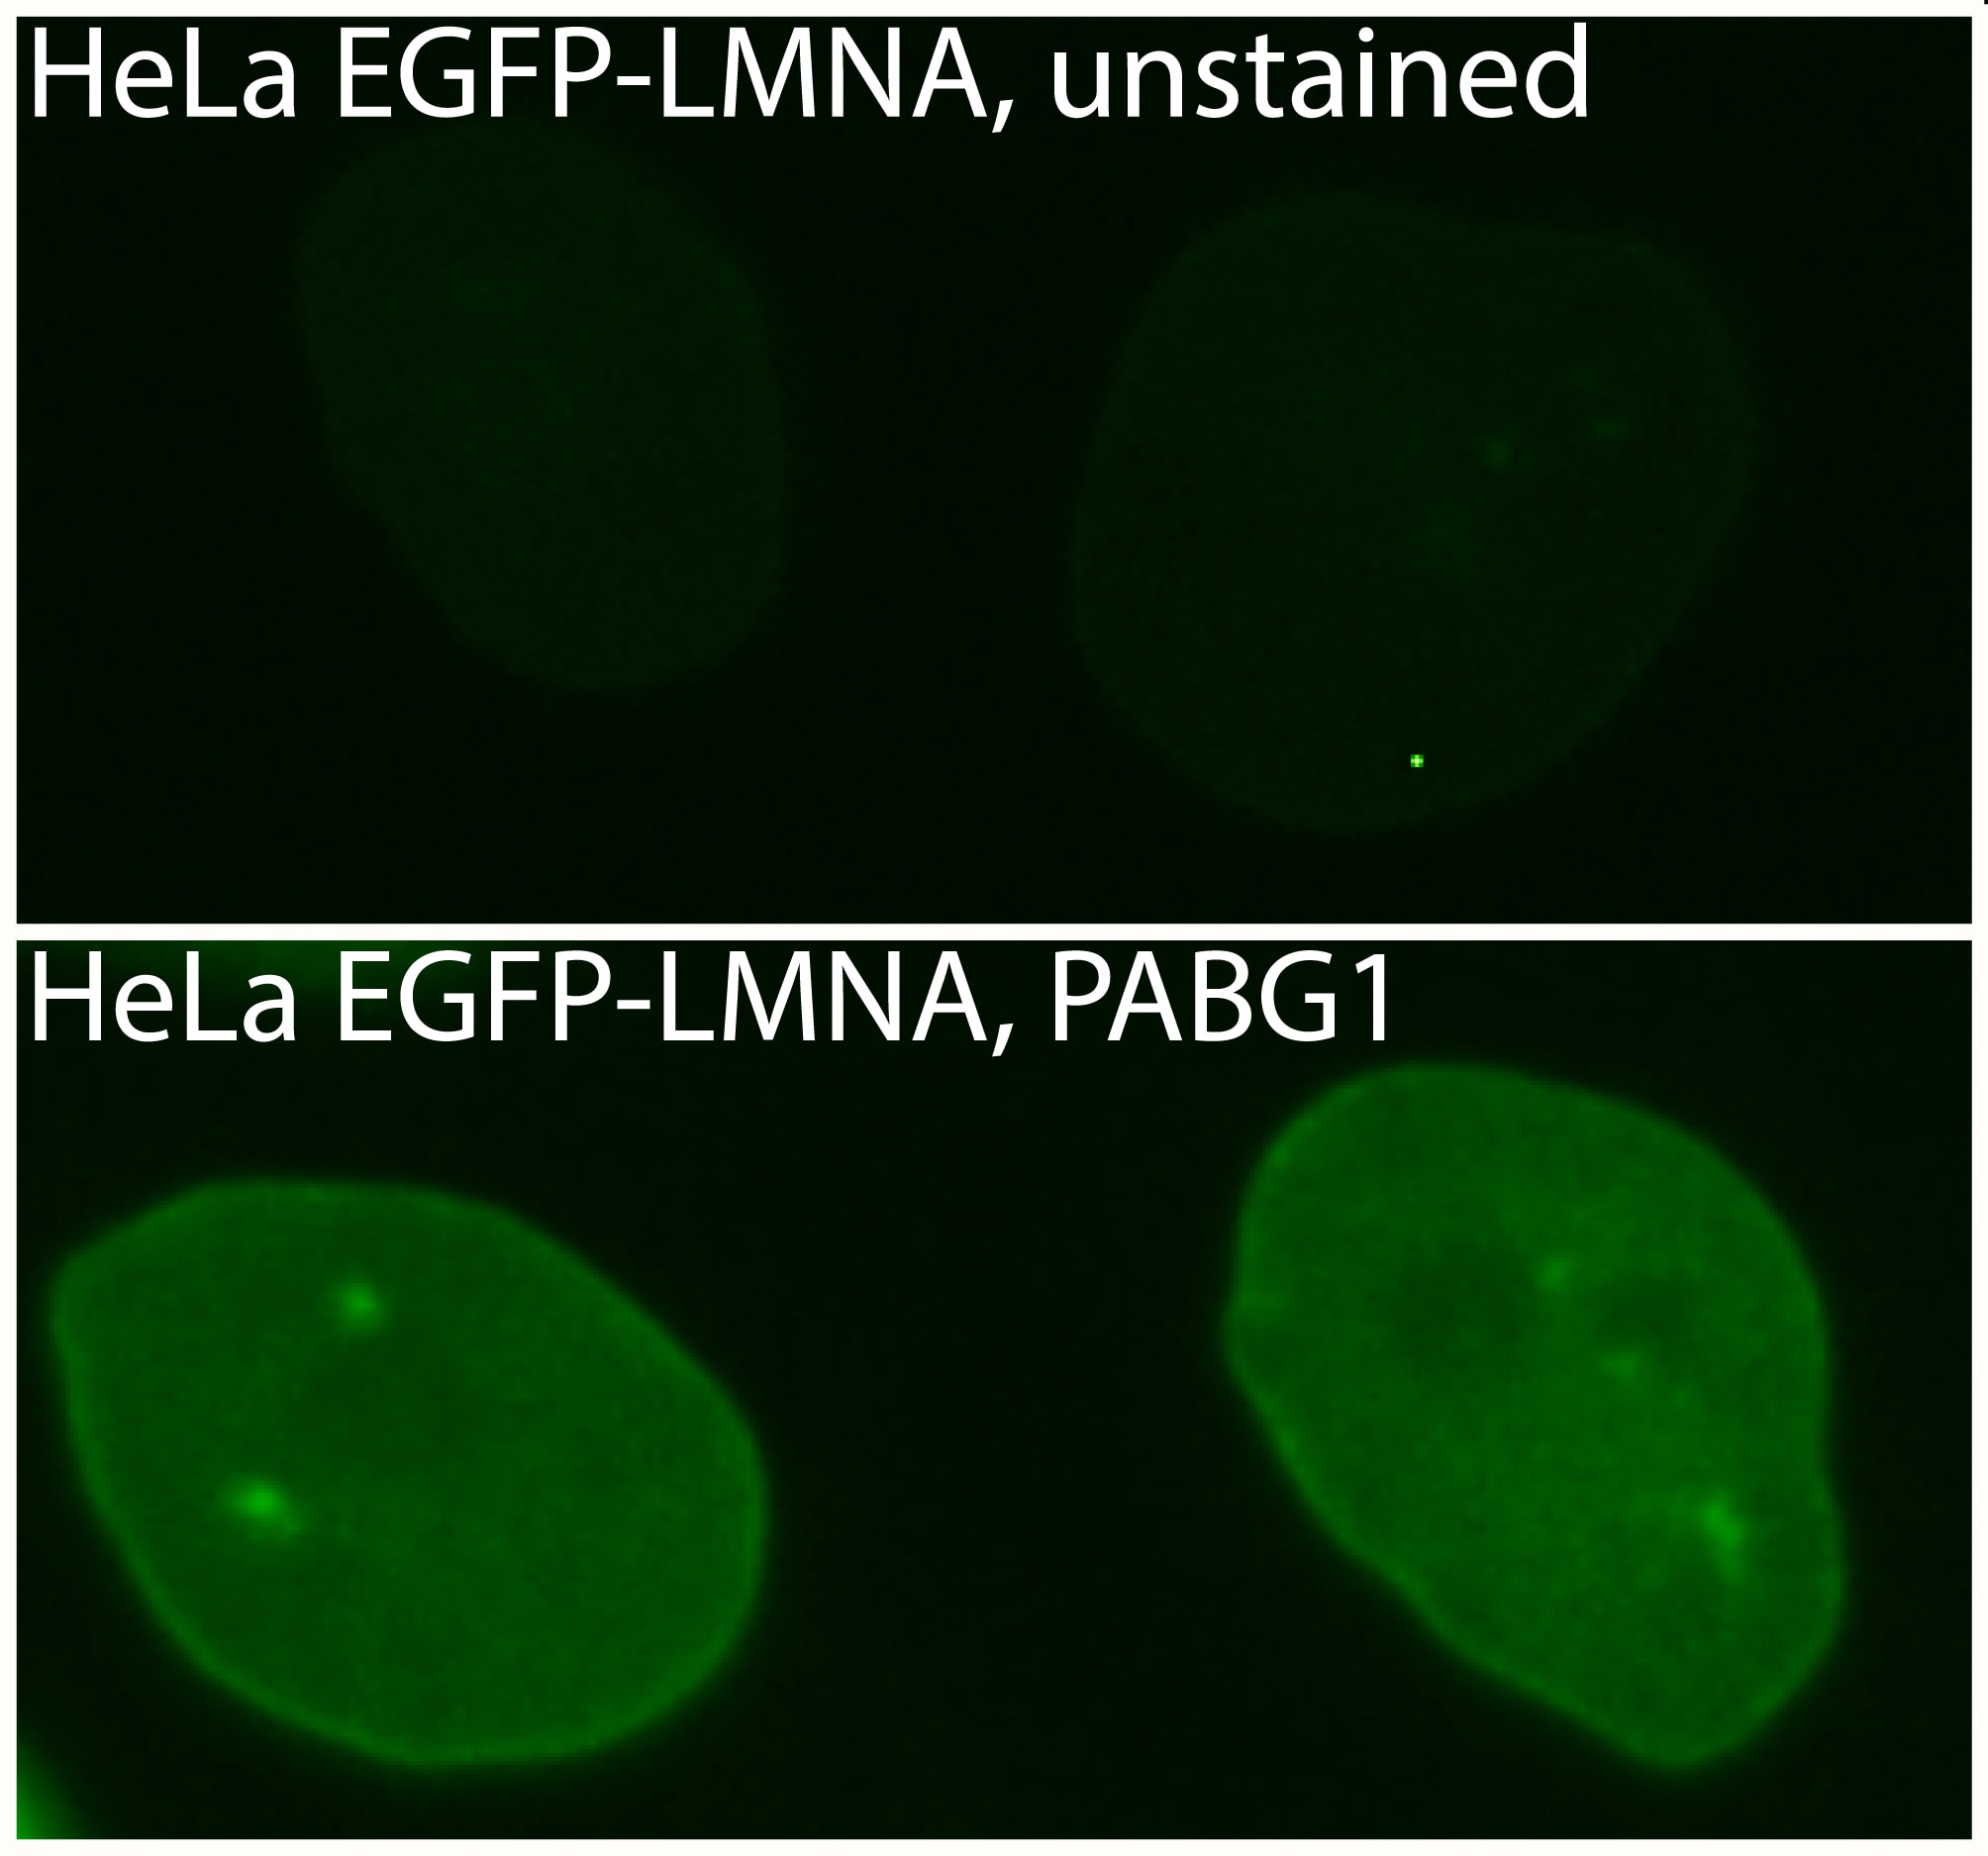 Immunofluorescence Primary antibody: Anti-GFP PABG1 1:1,000 Secondary antibody: anti-rabbit_Alexa488 1:500